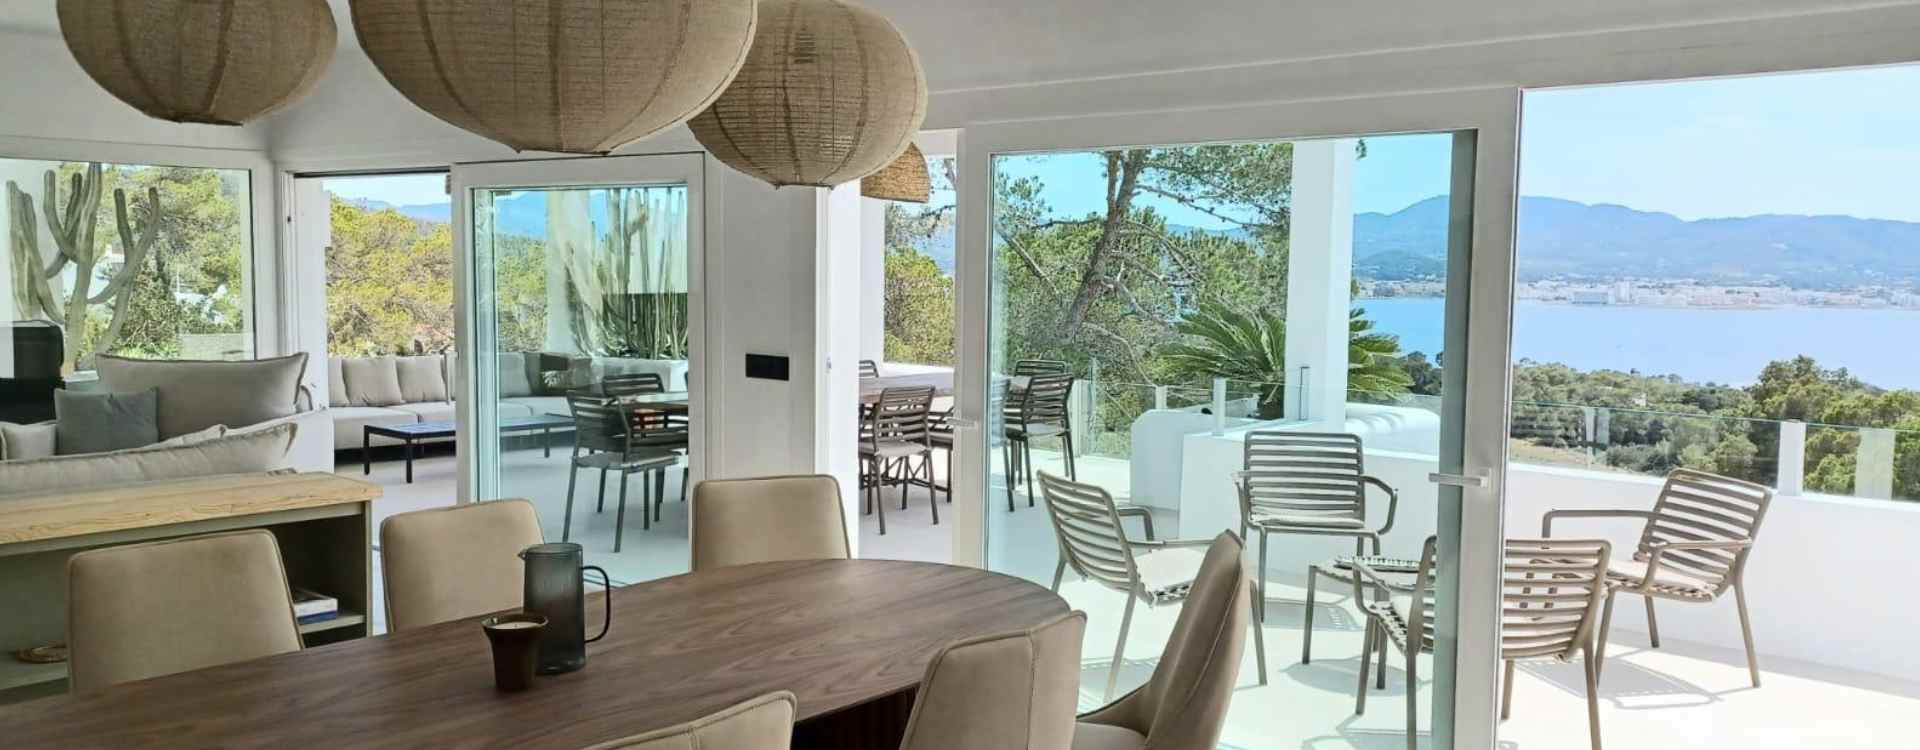 Villa Bedoin - Ibiza - vakantiehuis